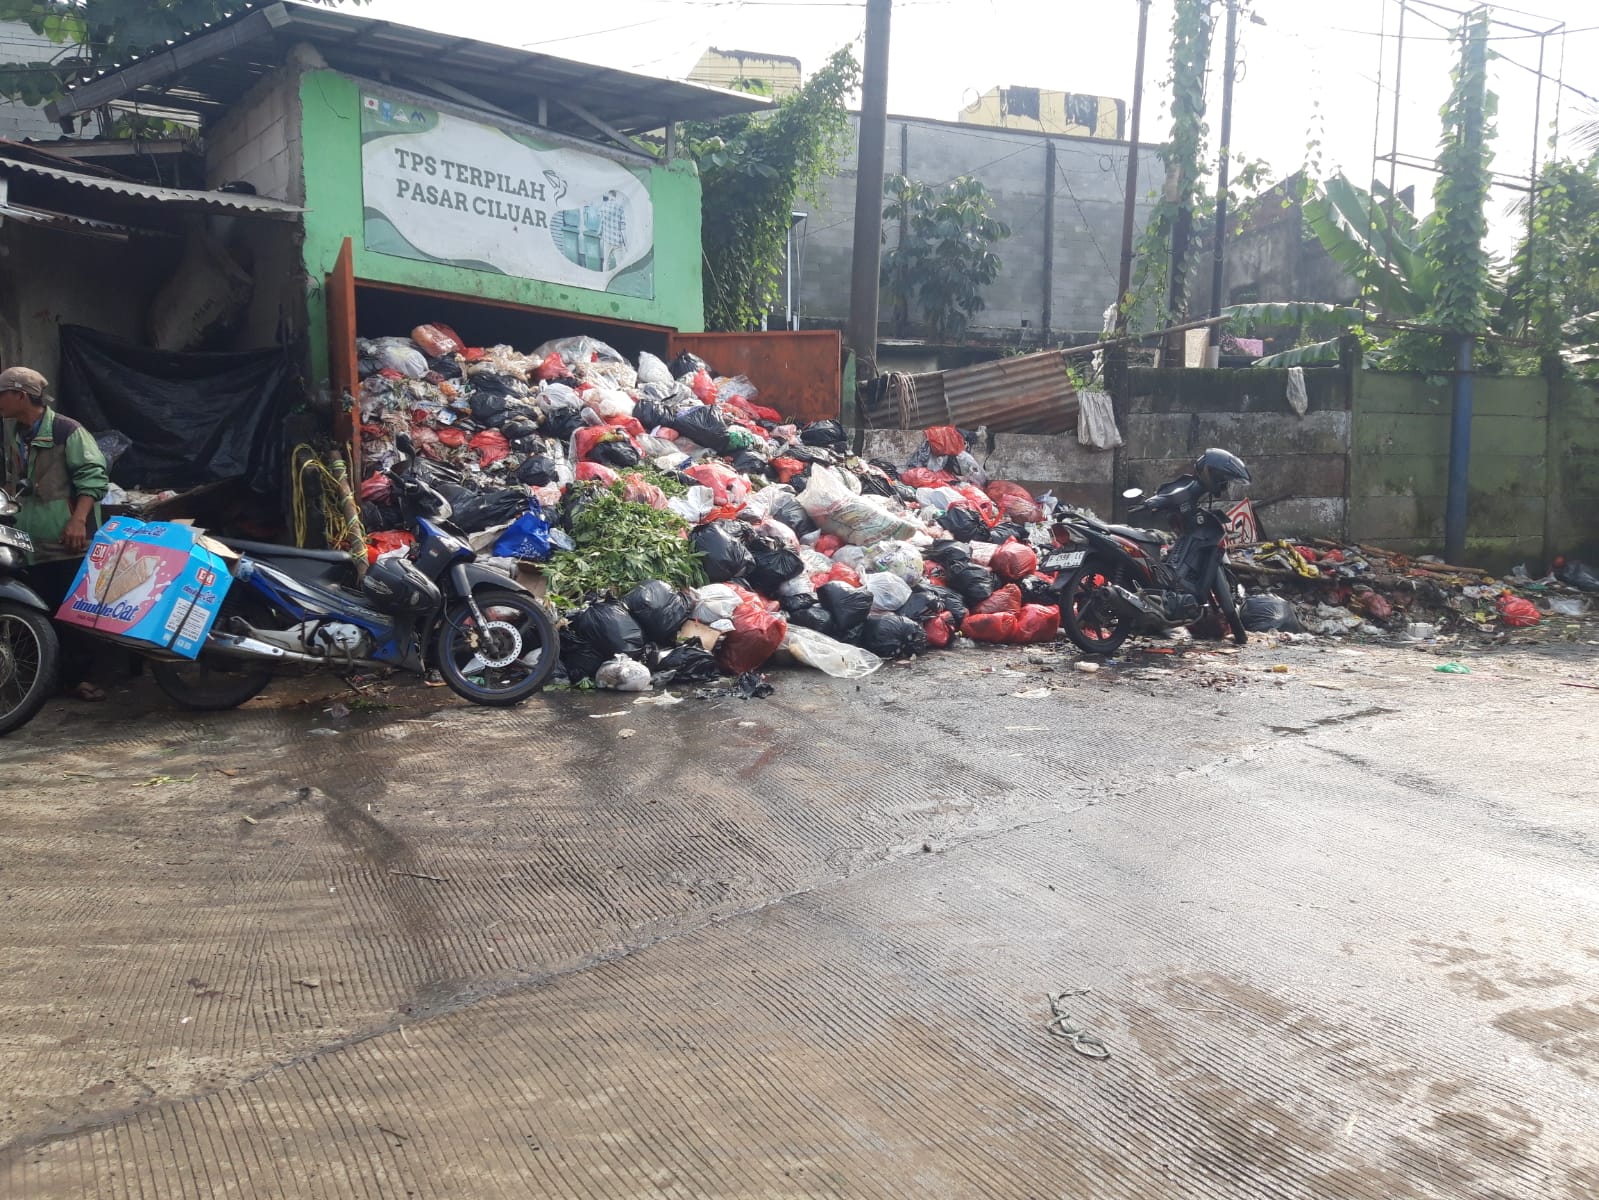 Sampah Kerap Menumpuk di Pintu Masuk Pasar Ciluar, Manajemen Salahkan Warga?